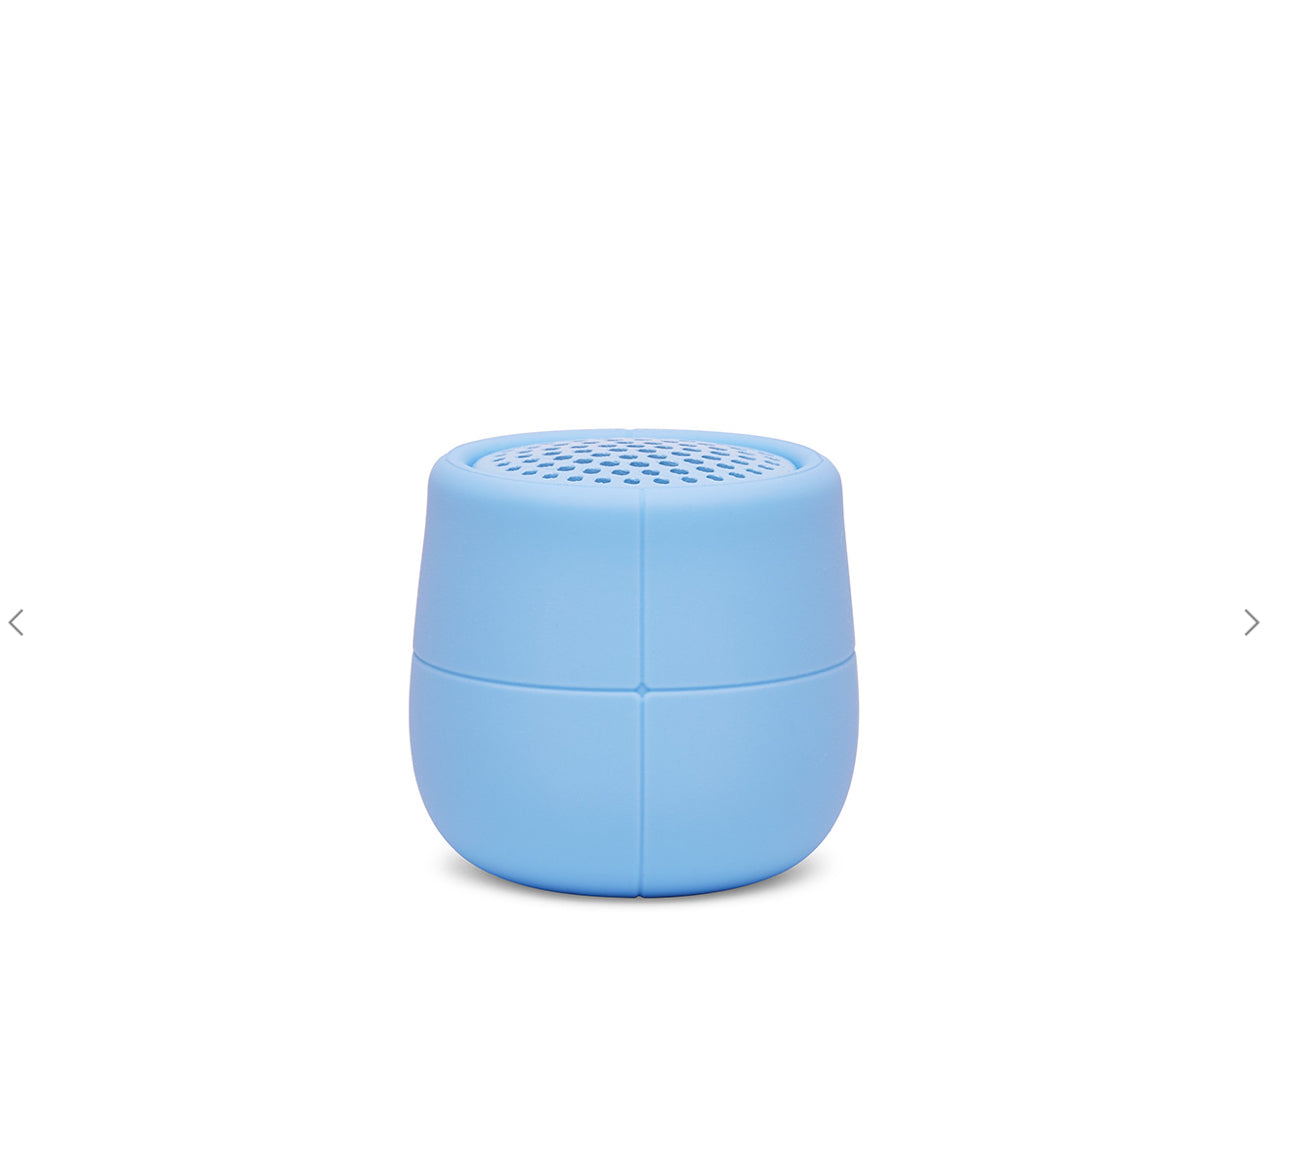 Lexon Mino X Waterproof Speaker - Light Blue at ooh la la! in Grapevine TX 76051